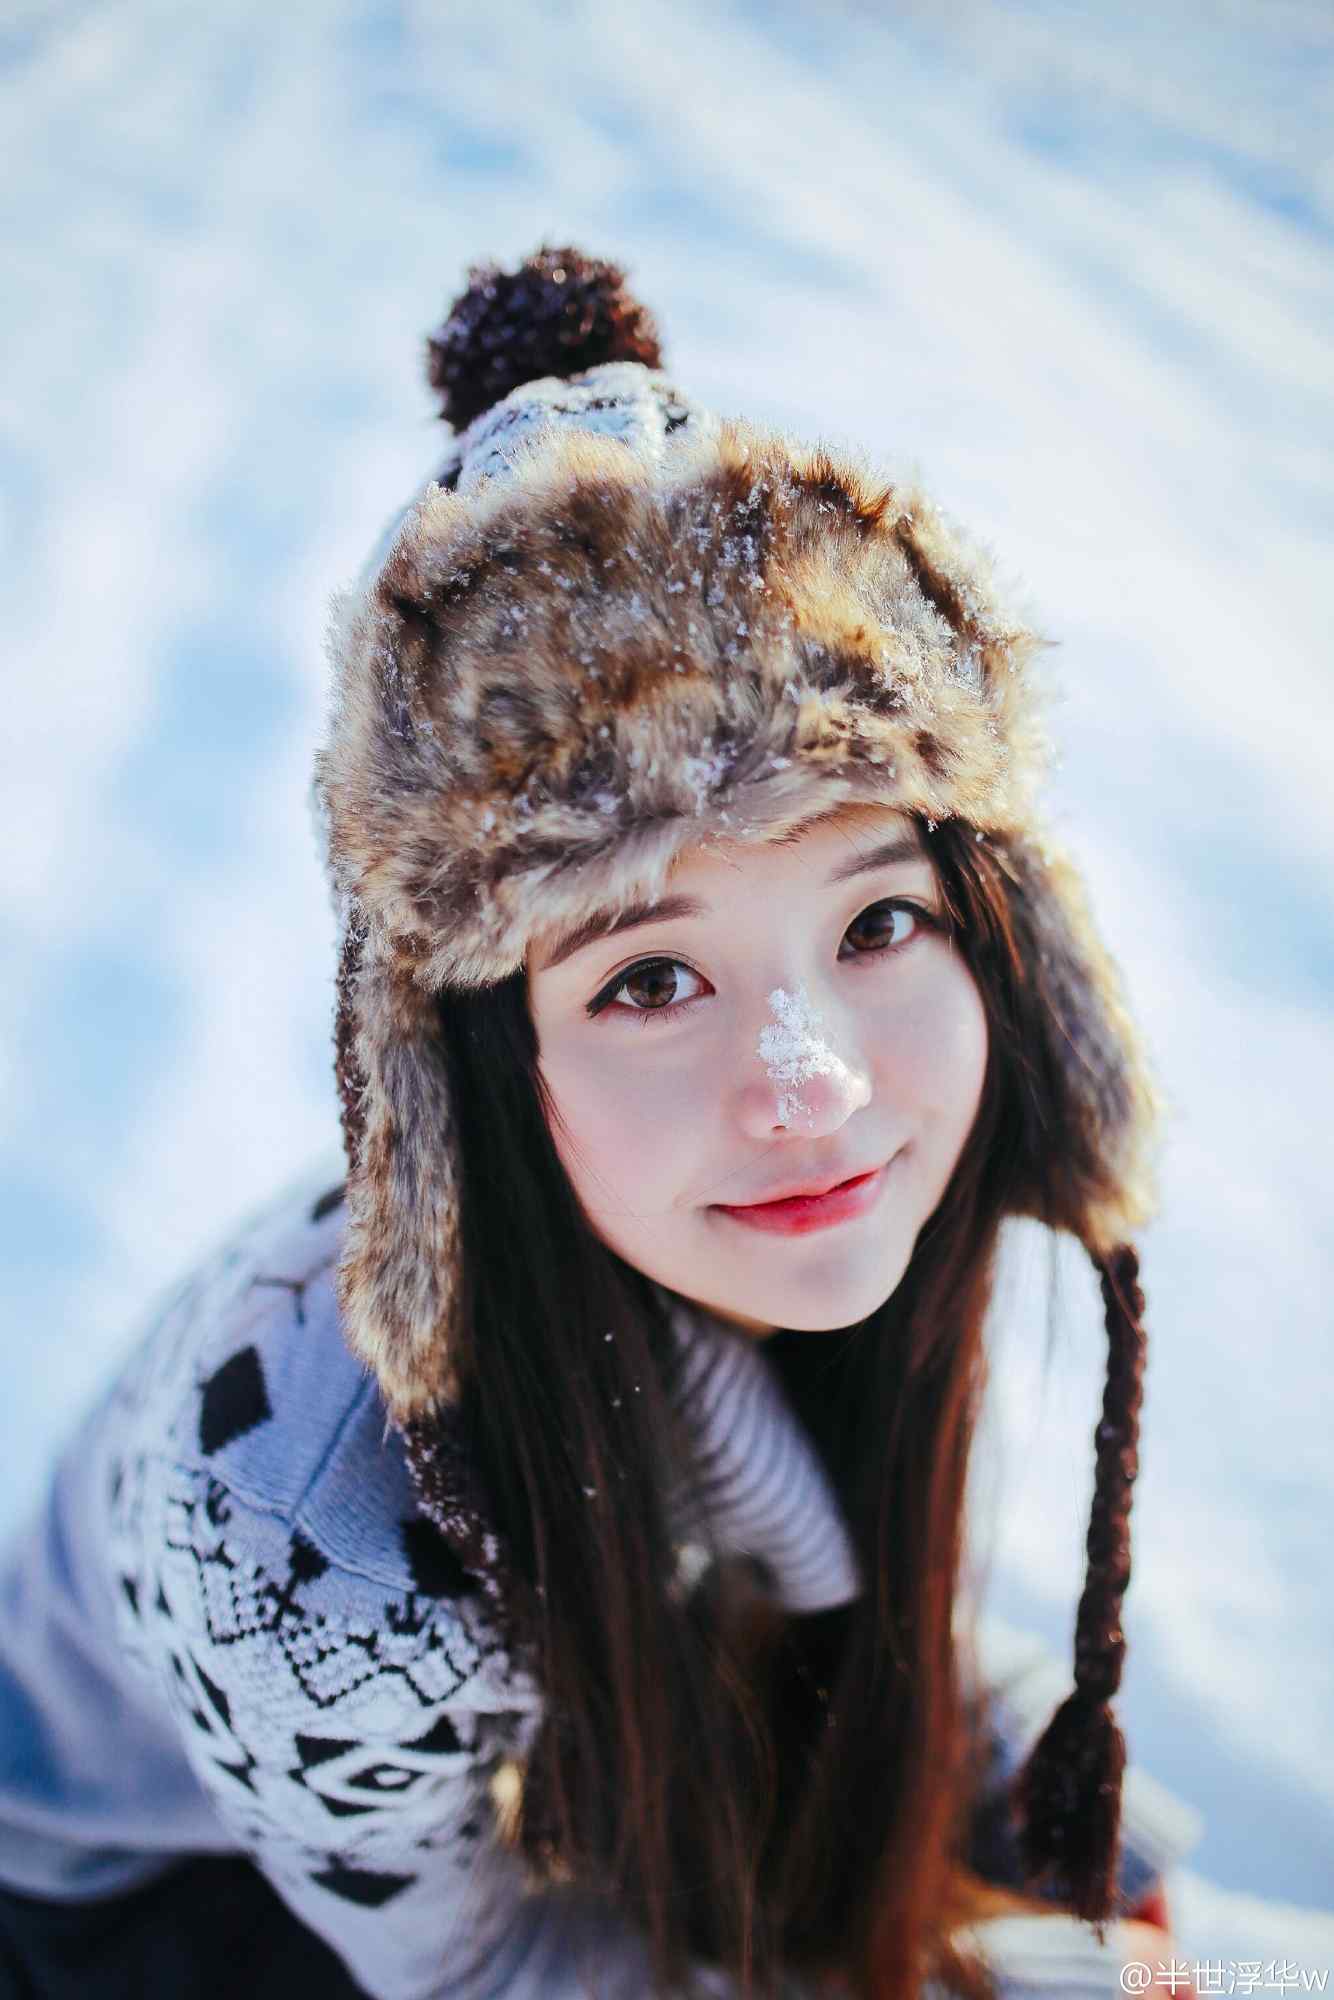 肖雨格子风衣雪景优美写真 - 哔哩哔哩